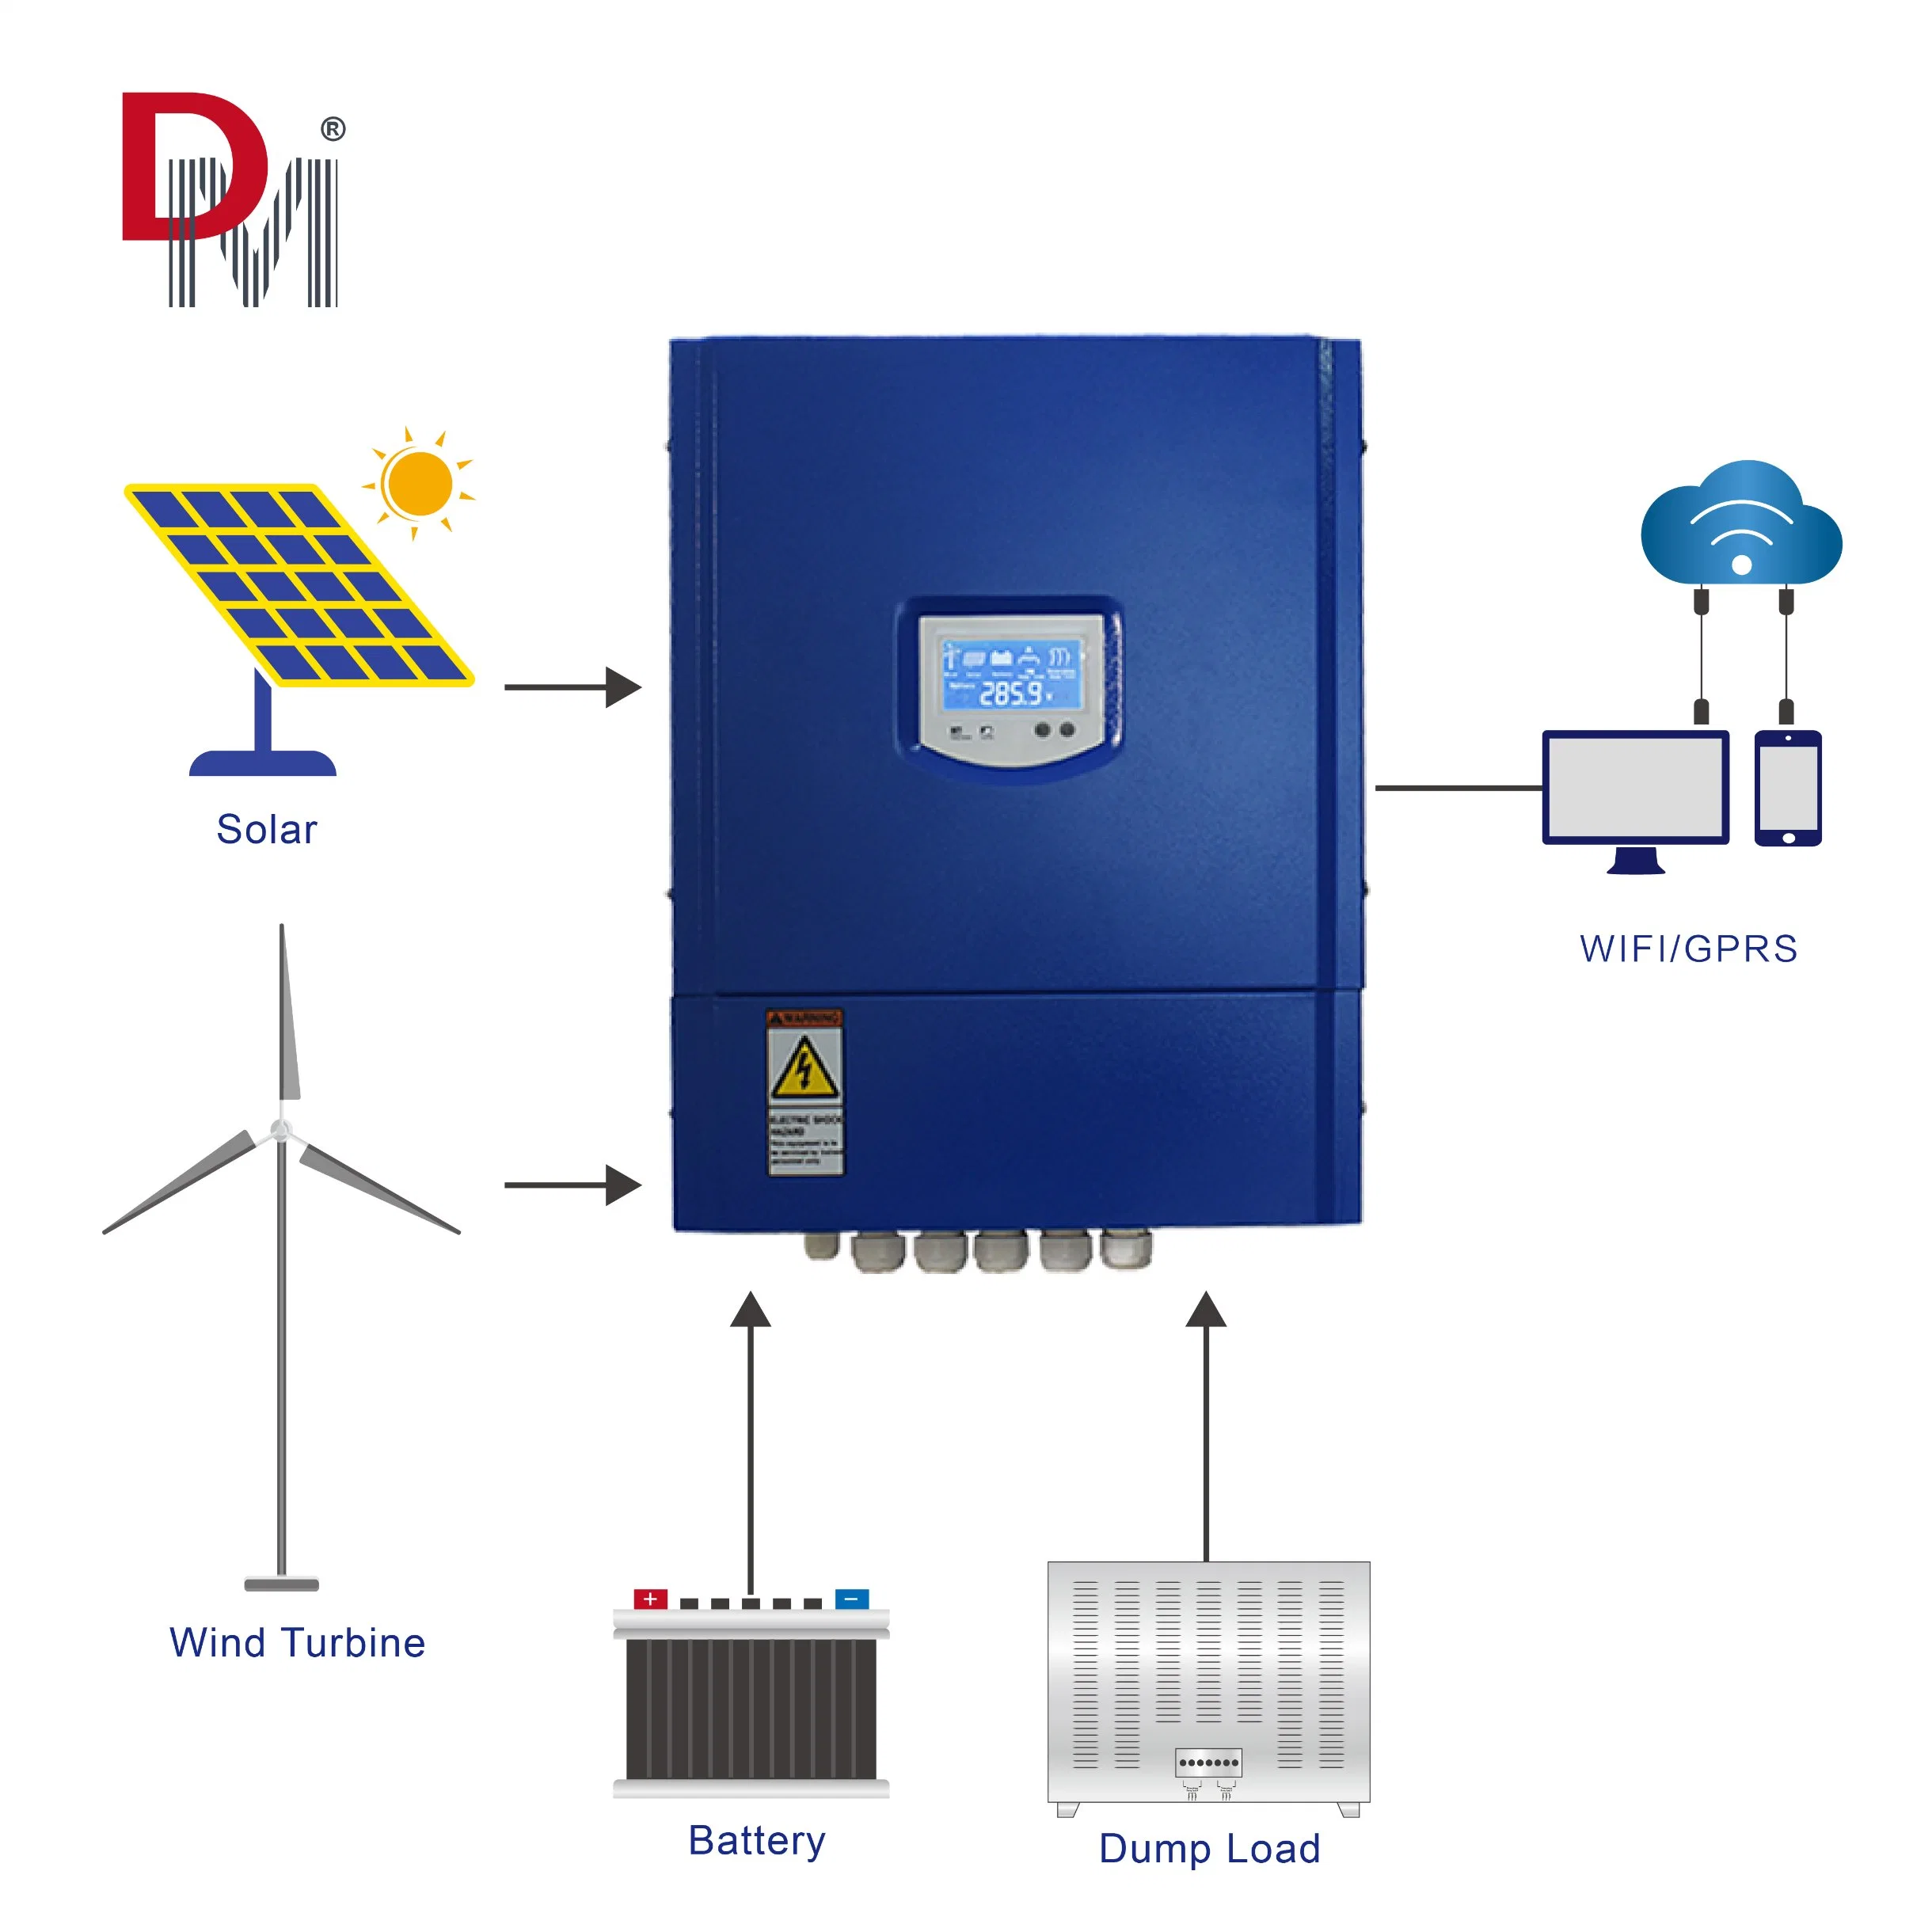 وحدة التحكم في شحن نظام الطاقة الهجين لتوربين الشحمي من الشبكة بقدرة 5 كيلو واط لوحات شمسية مولّد الرياح بقدرة 5 كيلو واط